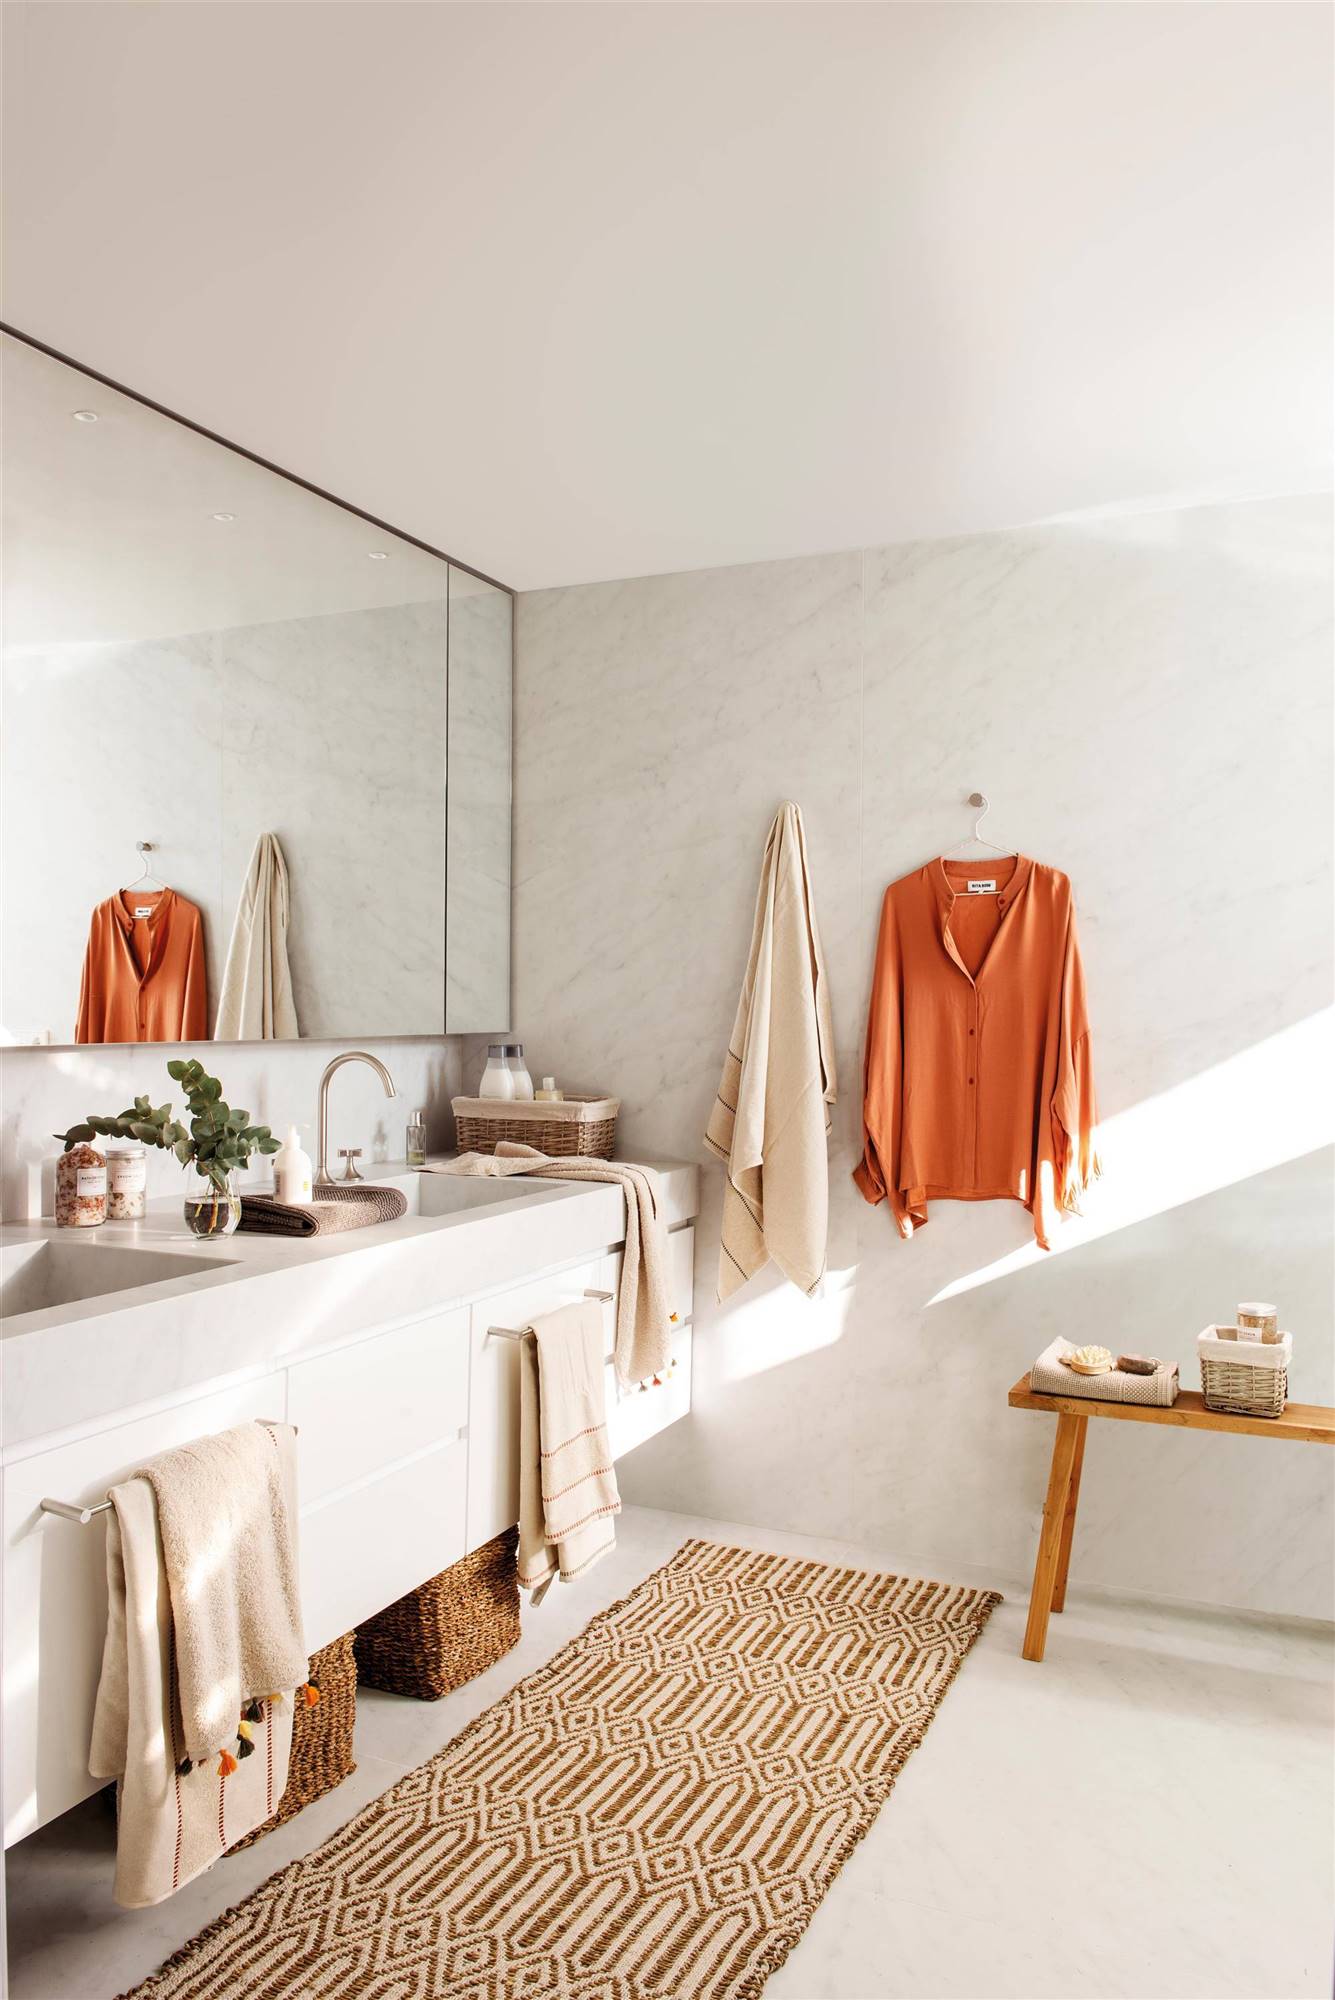 Baño decorado en blanco con alfombra vistosa en color mostaza y motivos geométricos.